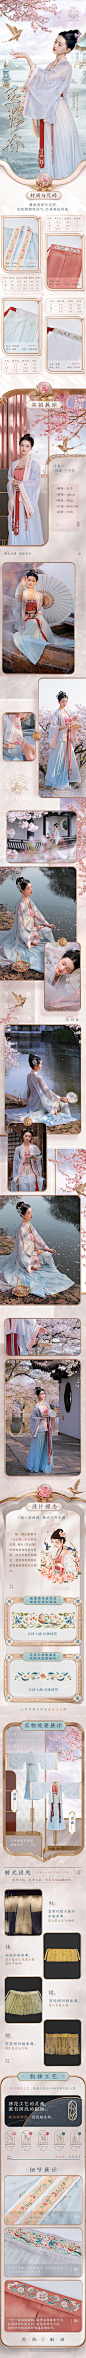 电商详情页设计排版模板 中国风 古风  汉服  女装